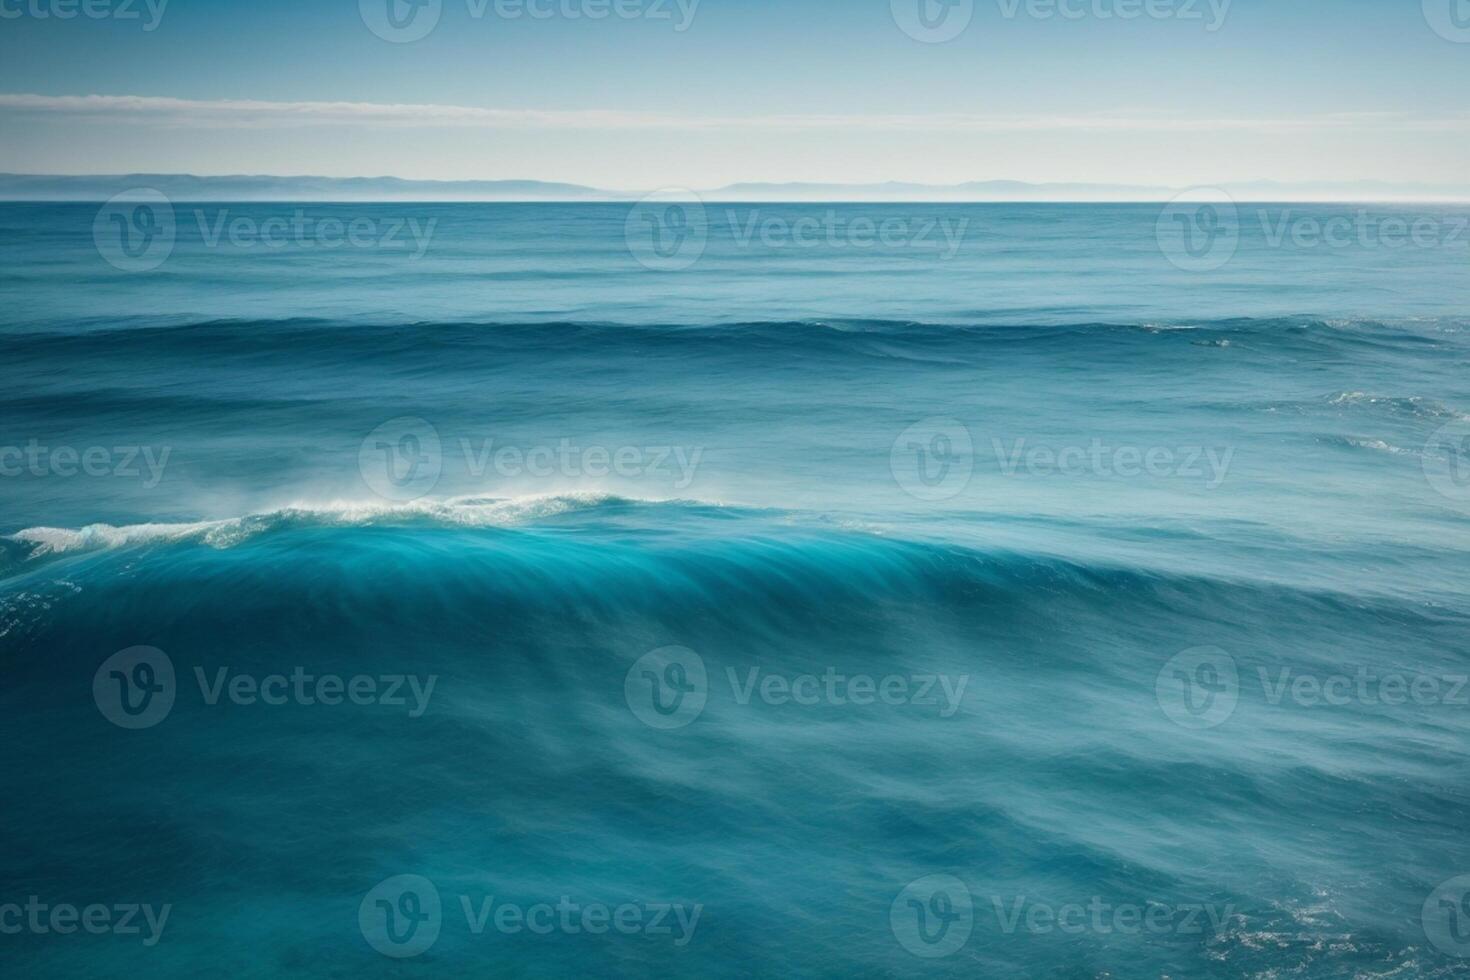 une magnifique plage avec vagues et bleu ciel photo